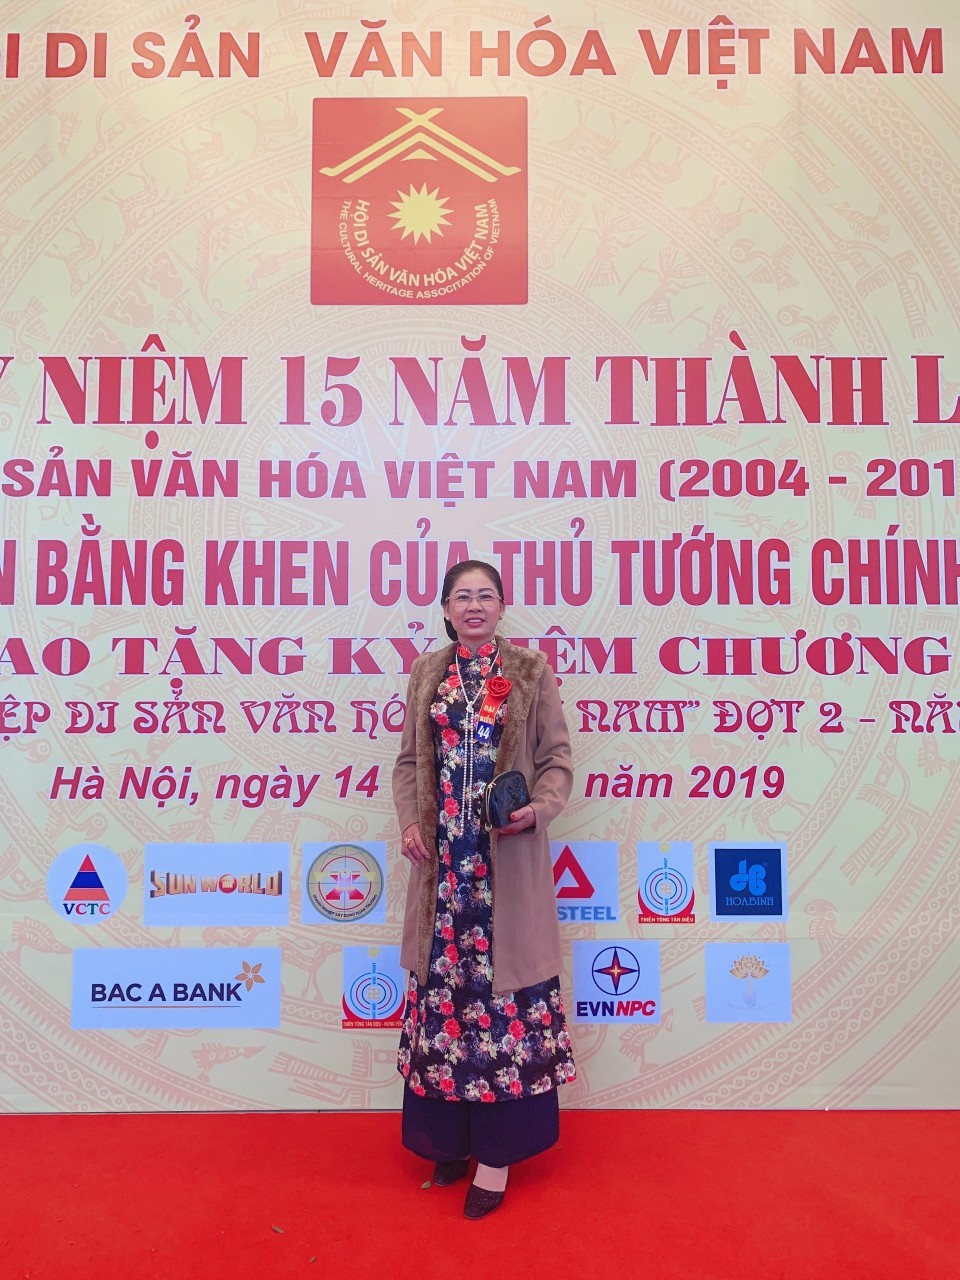 Nghệ nhân Trần Thị Hằng – Luôn giữ gìn và phát huy di sản văn hóa tín ngưỡng Việt Nam